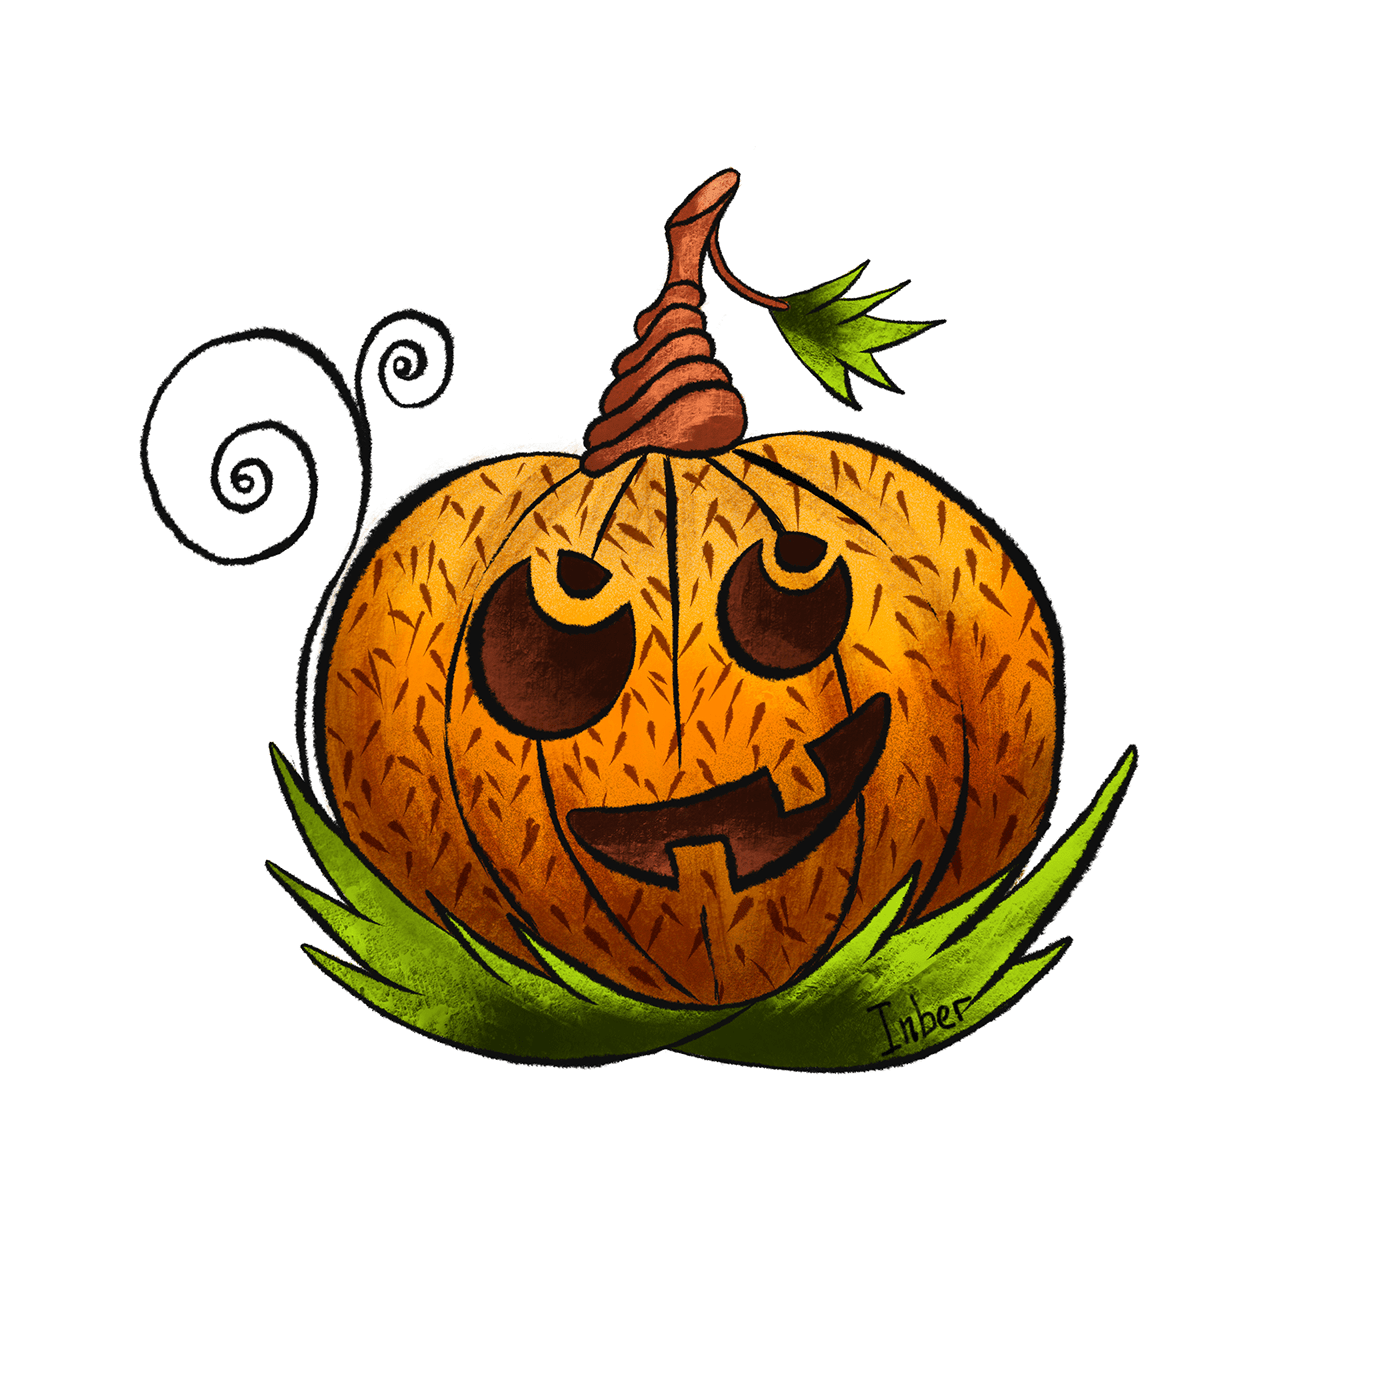 Immagine del PNG della zucca della decorazione di Halloween